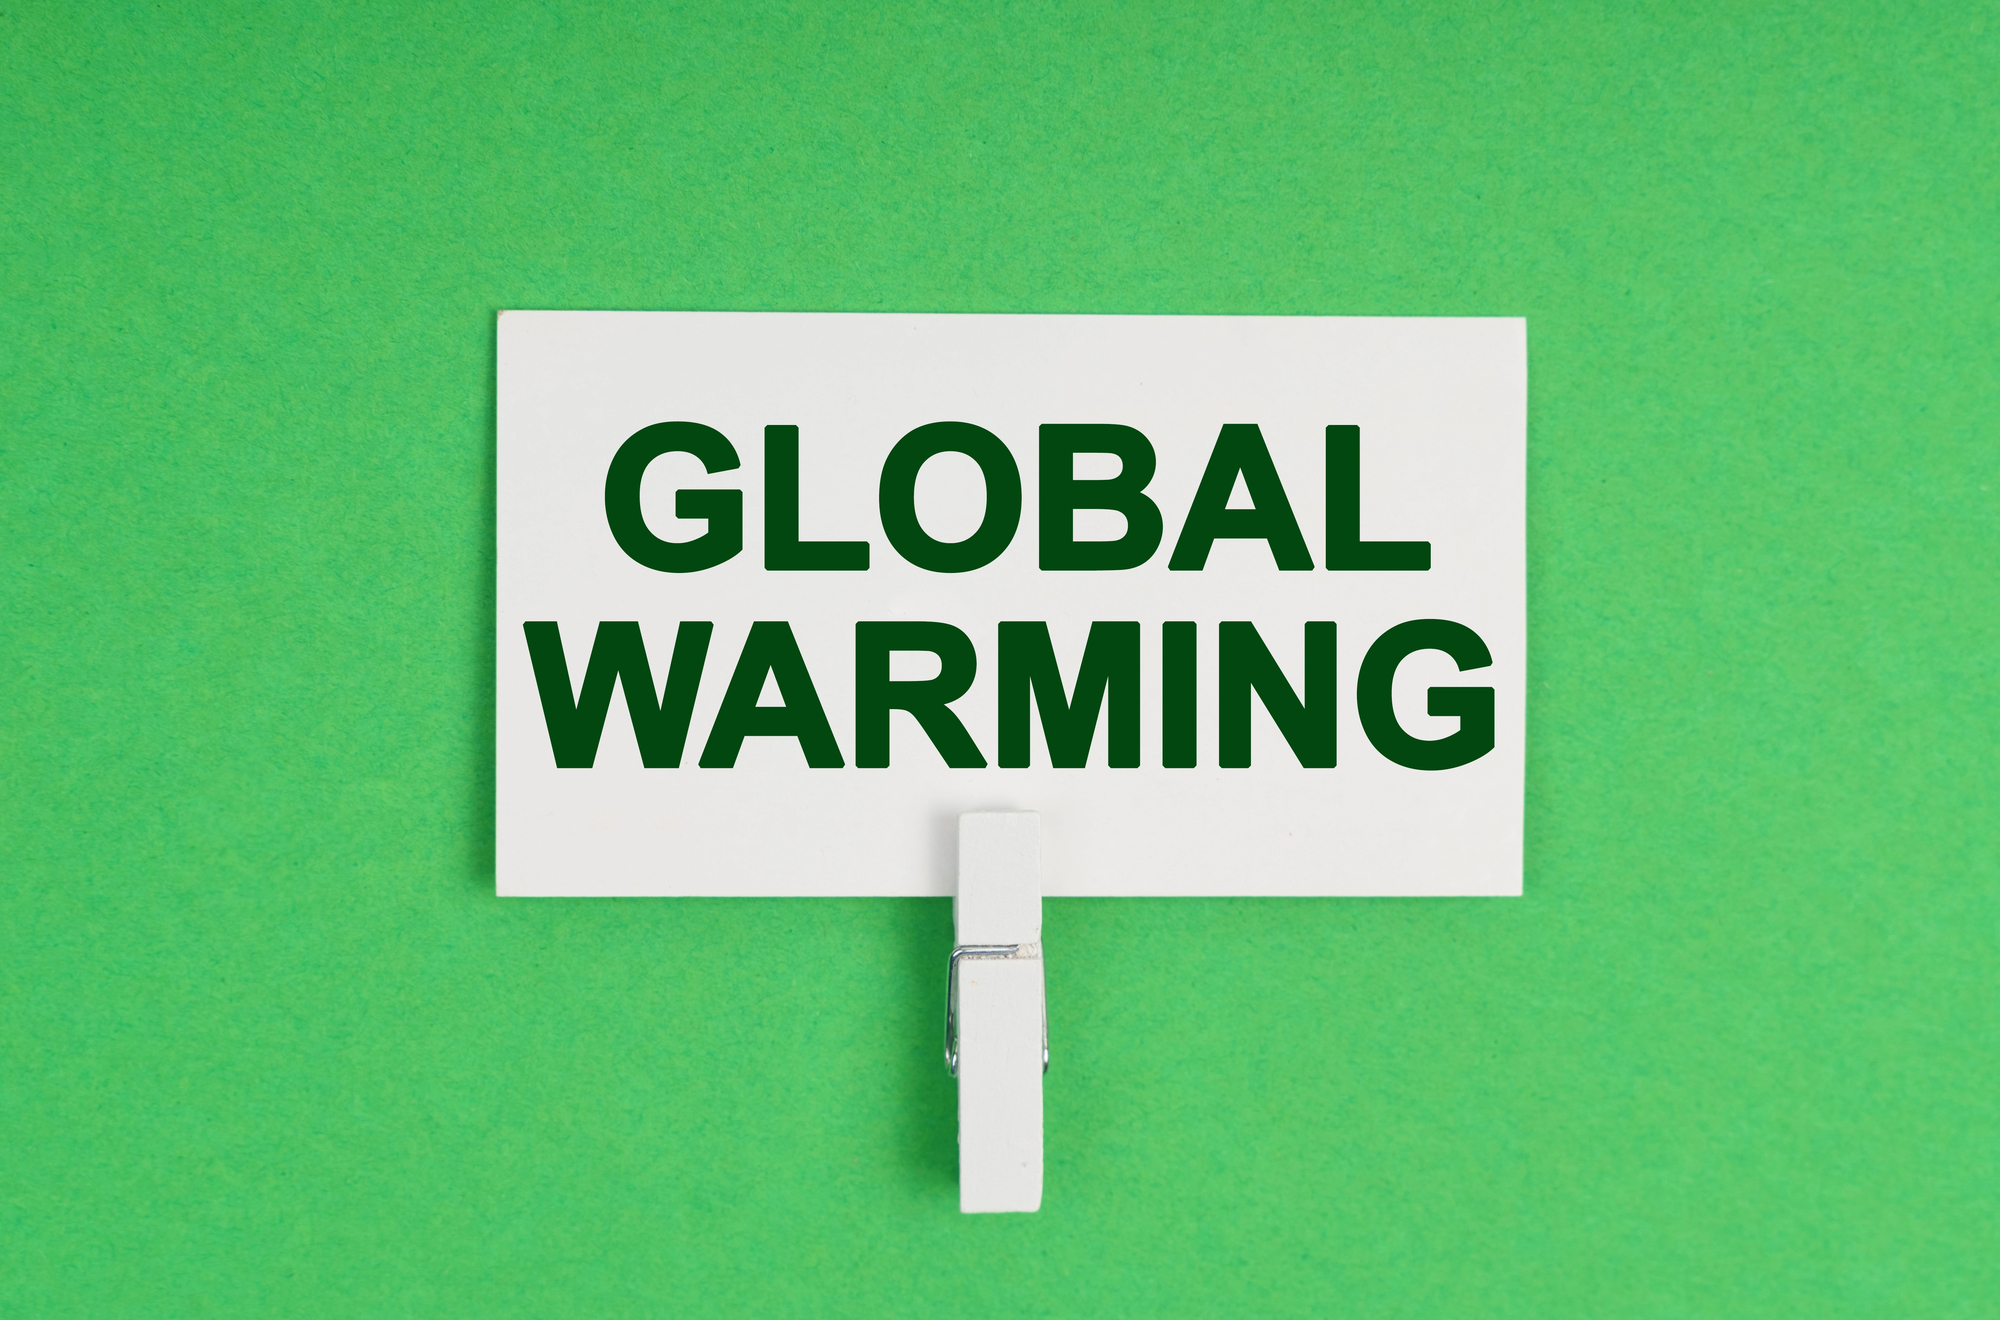 Riscaldamento globale antropico: accelerazione senza precedenti